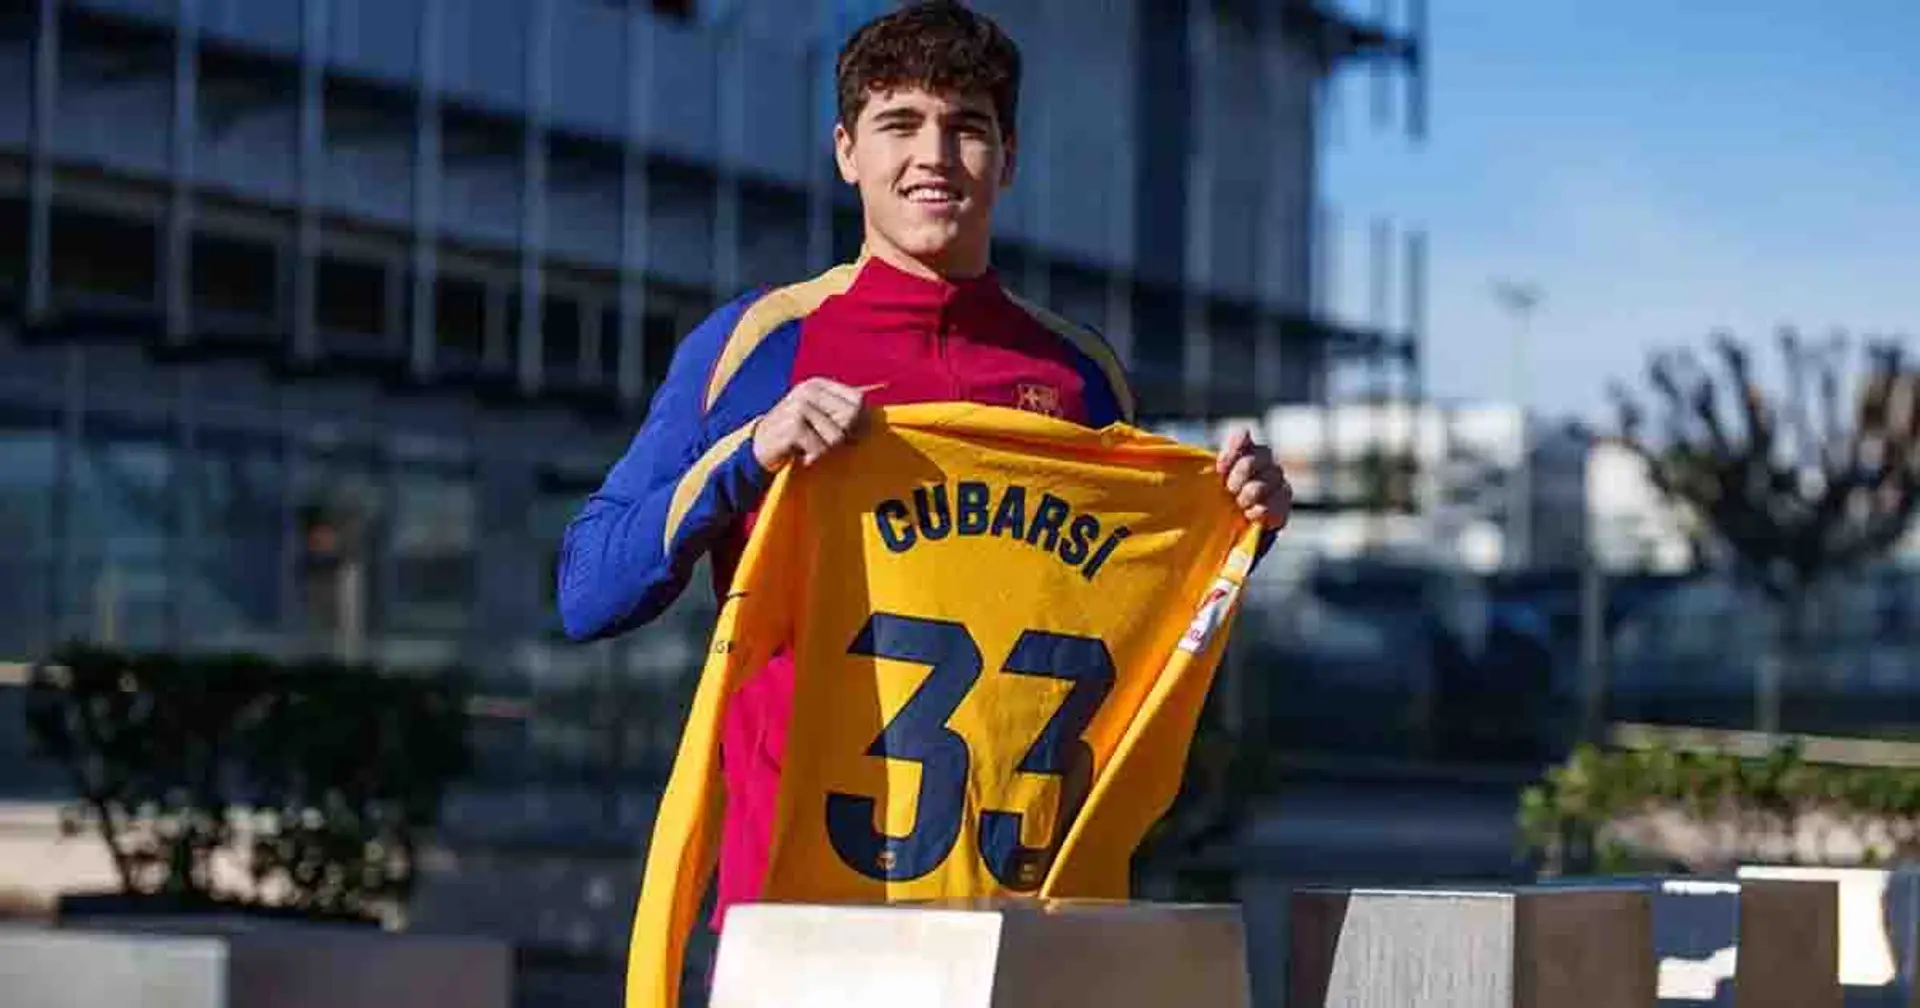 Cubarsi signe un contrat de trois ans à Barcelone